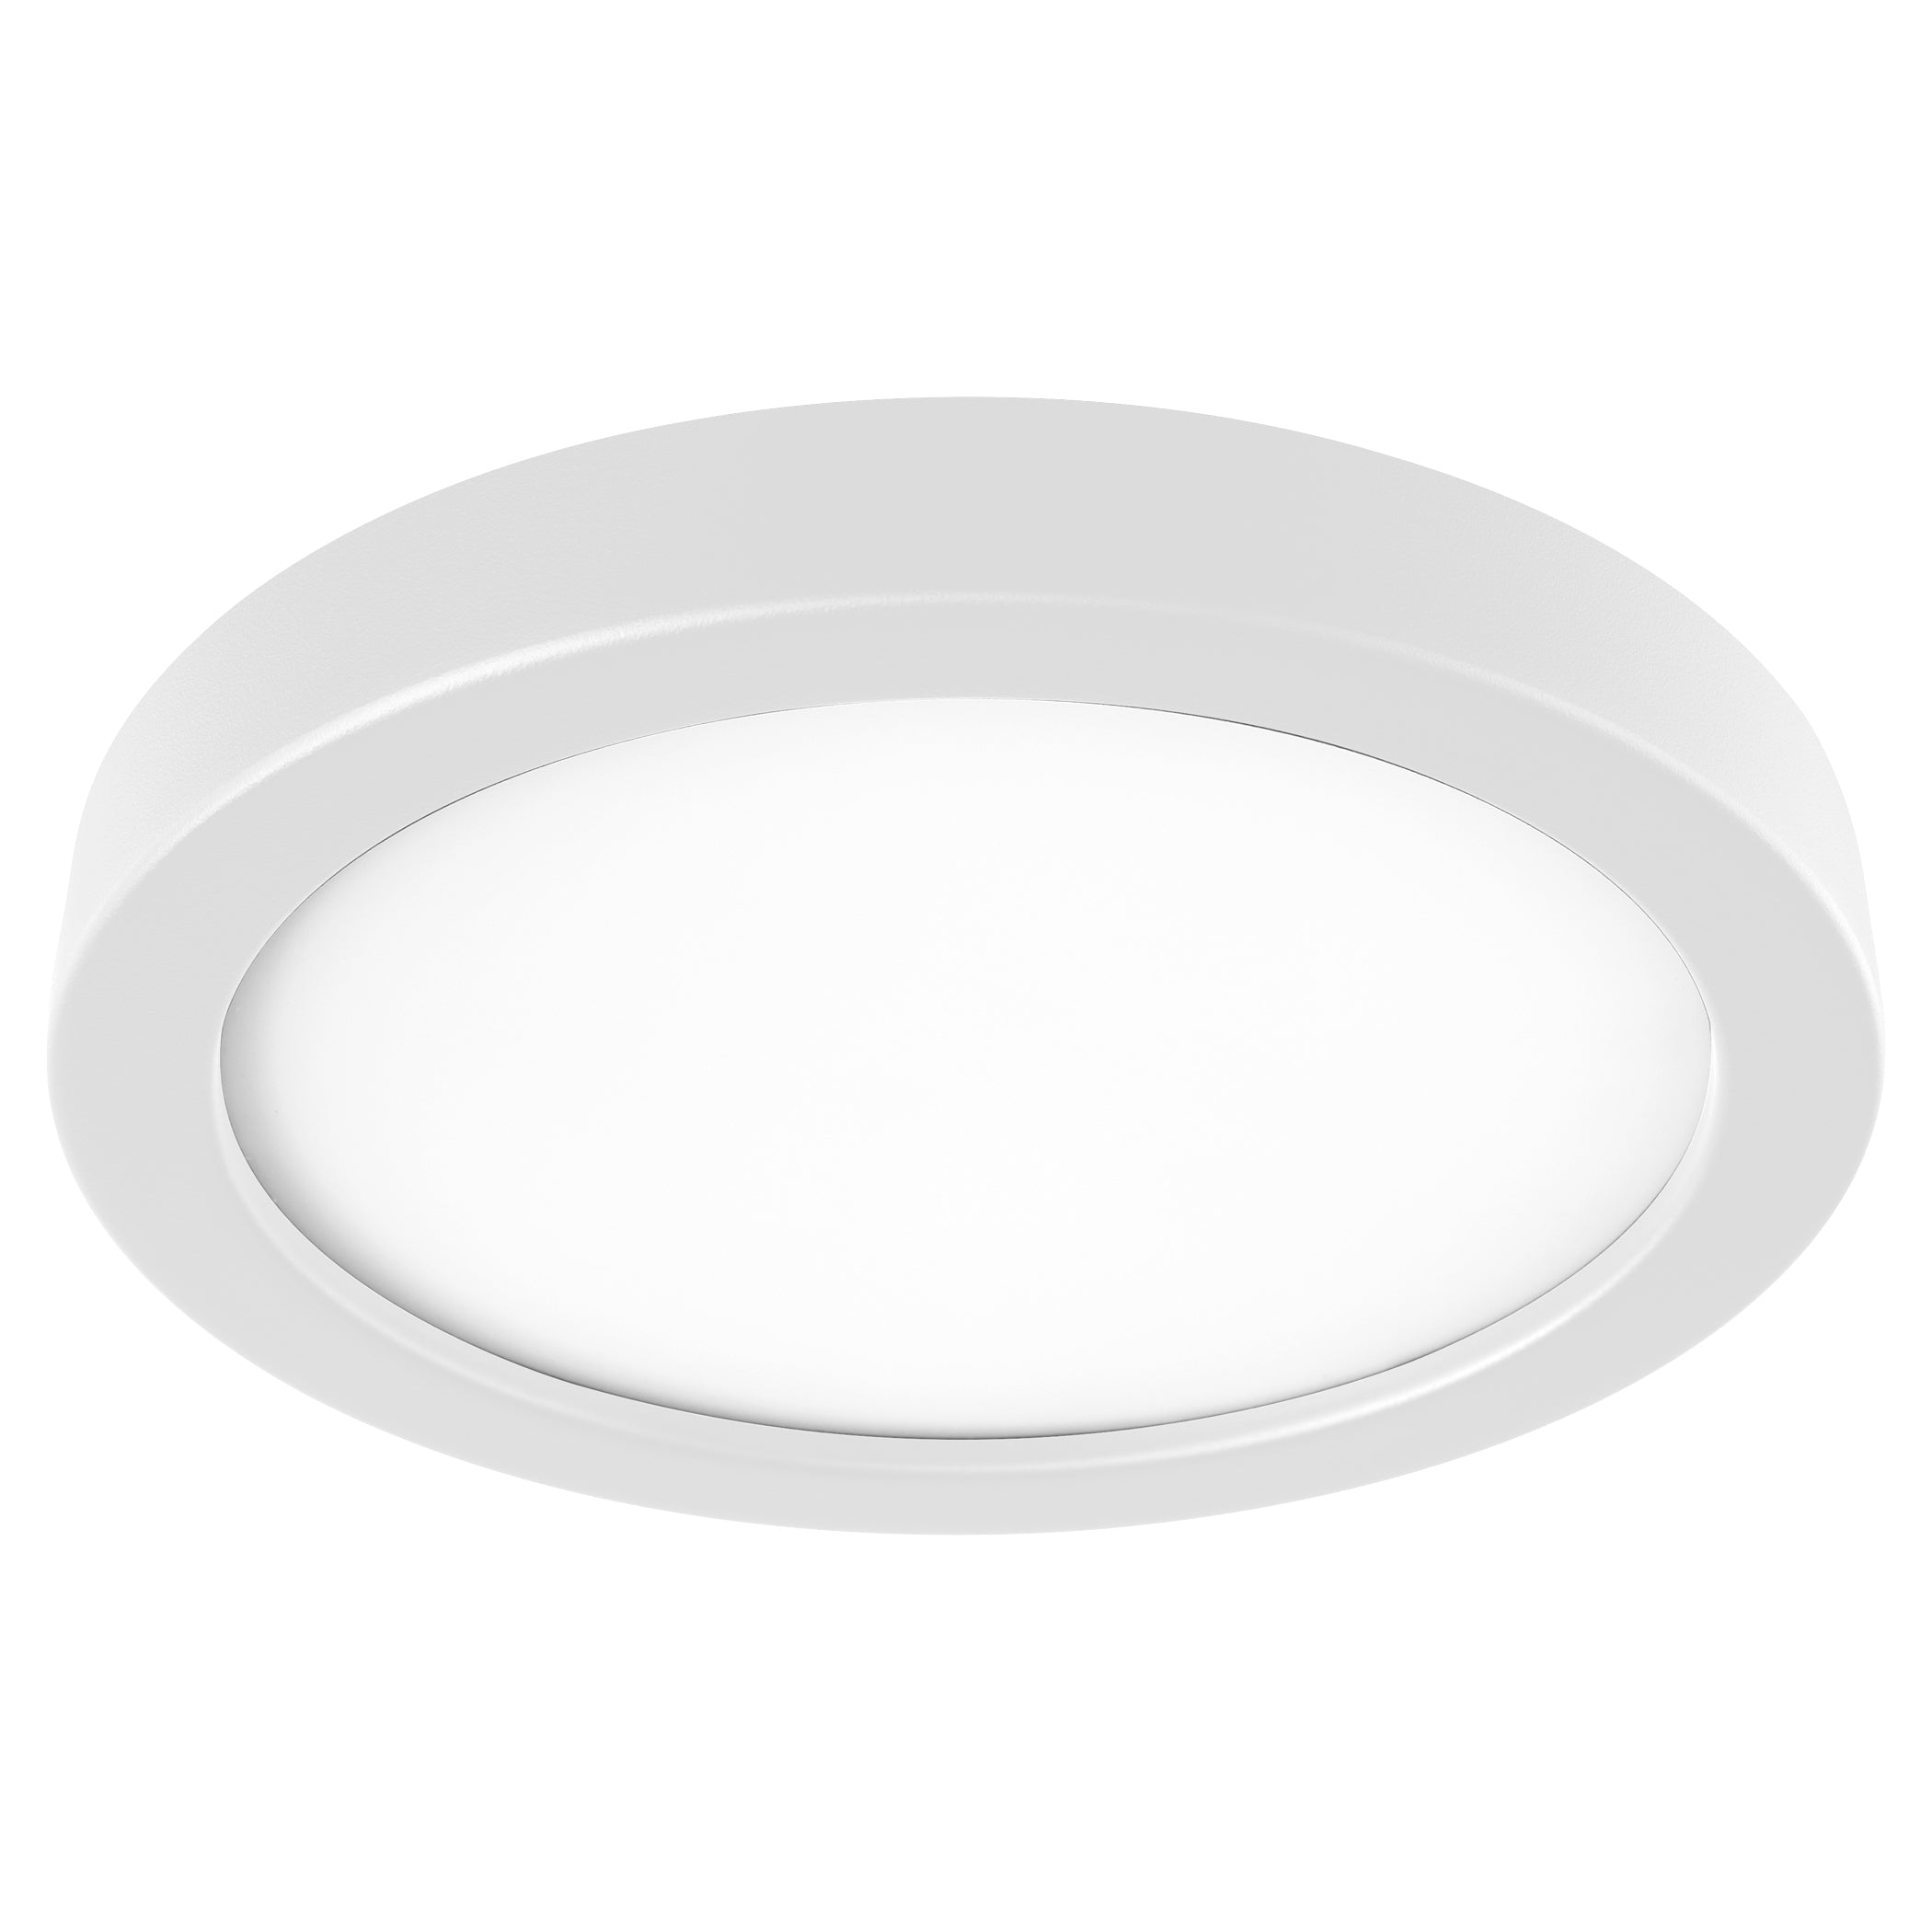 Oxygen Adora 3-9-110-6 Ceiling Fan LED Light Kit - White